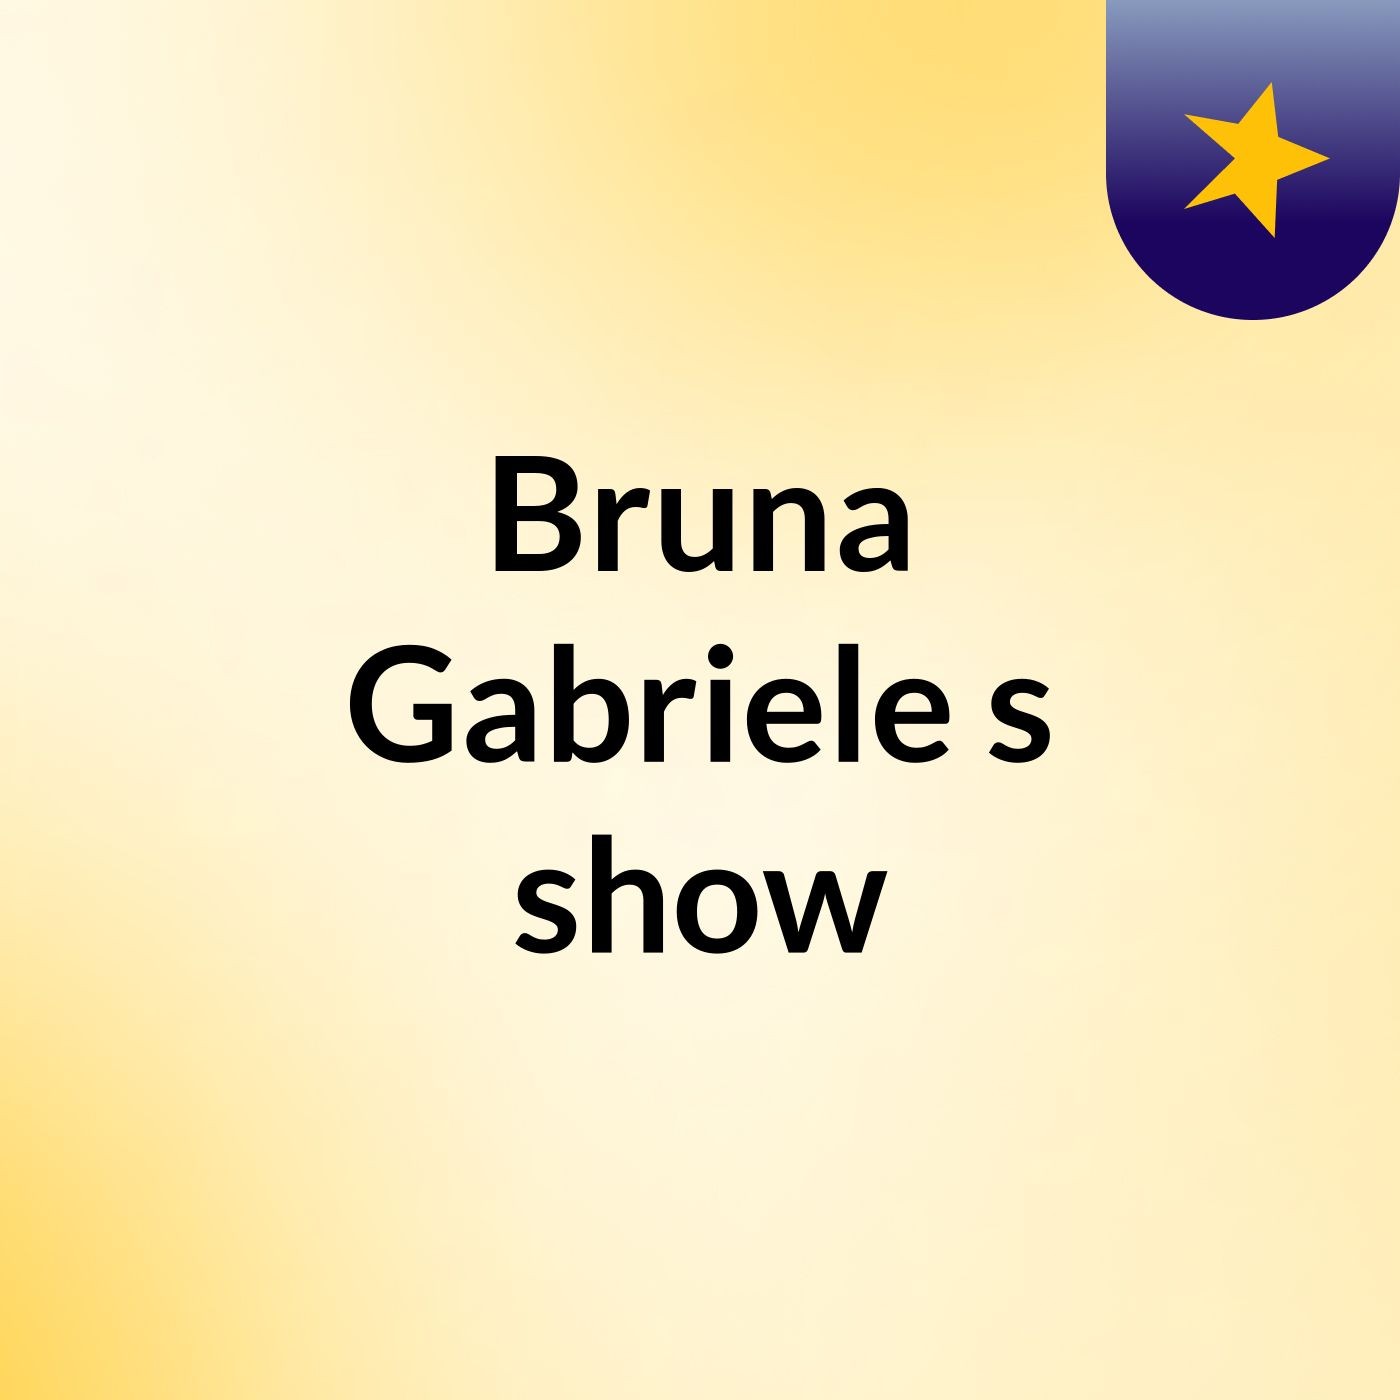 Bruna Gabriele's show